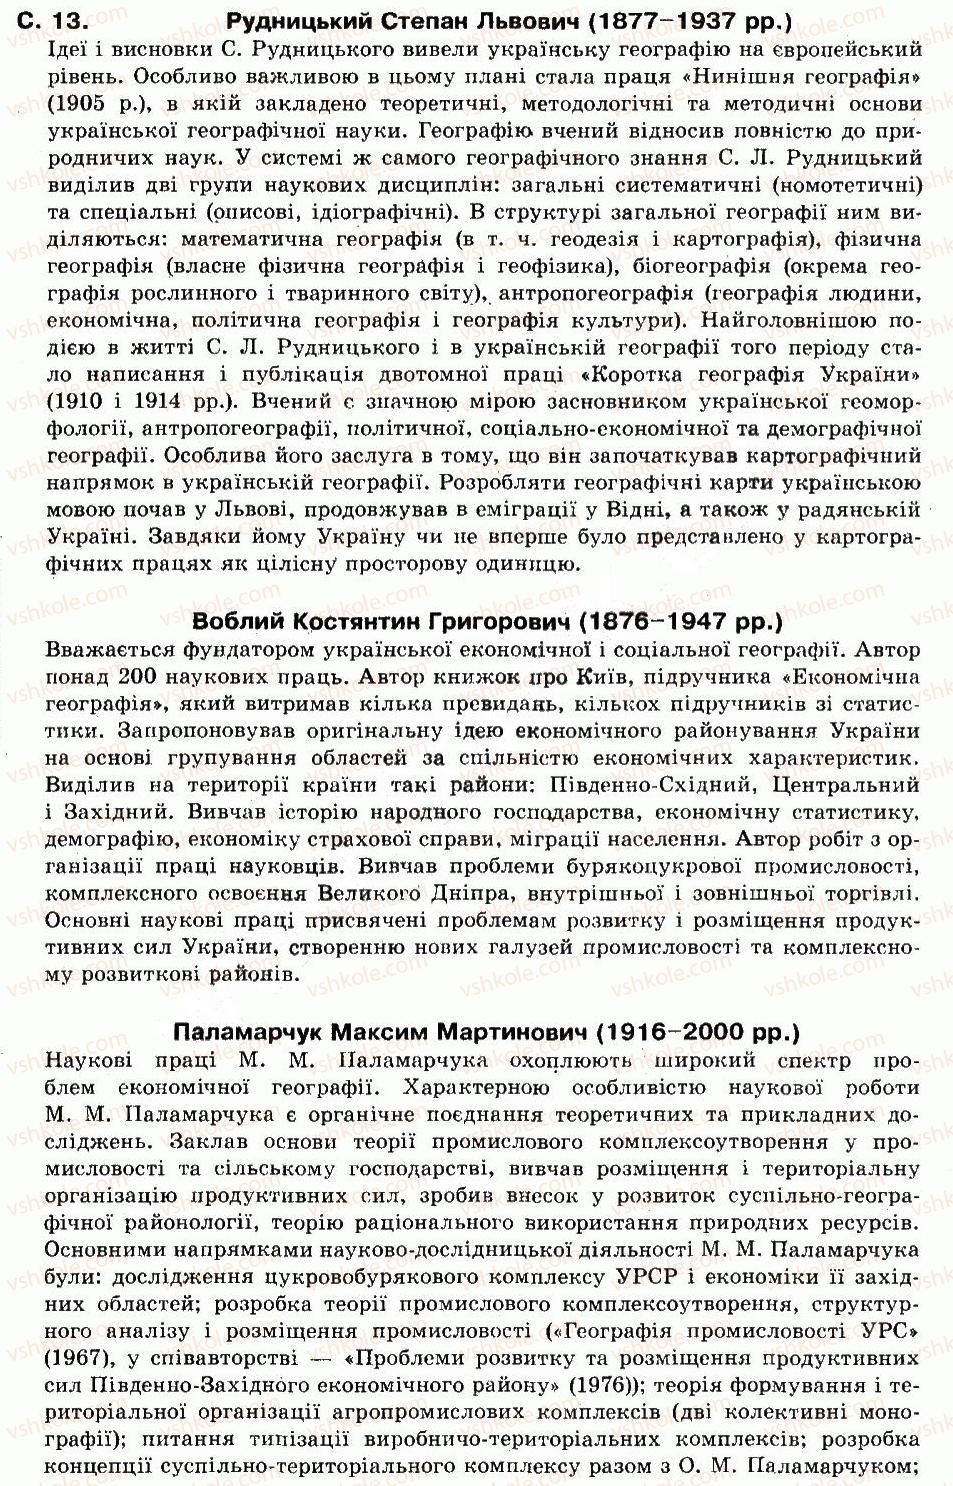 9-geografiya-of-nadtoka-om-topuzov-2009--vstup-1-aktualnist-predmeta-ekonomichnoyi-i-sotsialnoyi-geografiyi-ukrayini-v-sistemi-geografichnoyi-nauki-3.jpg